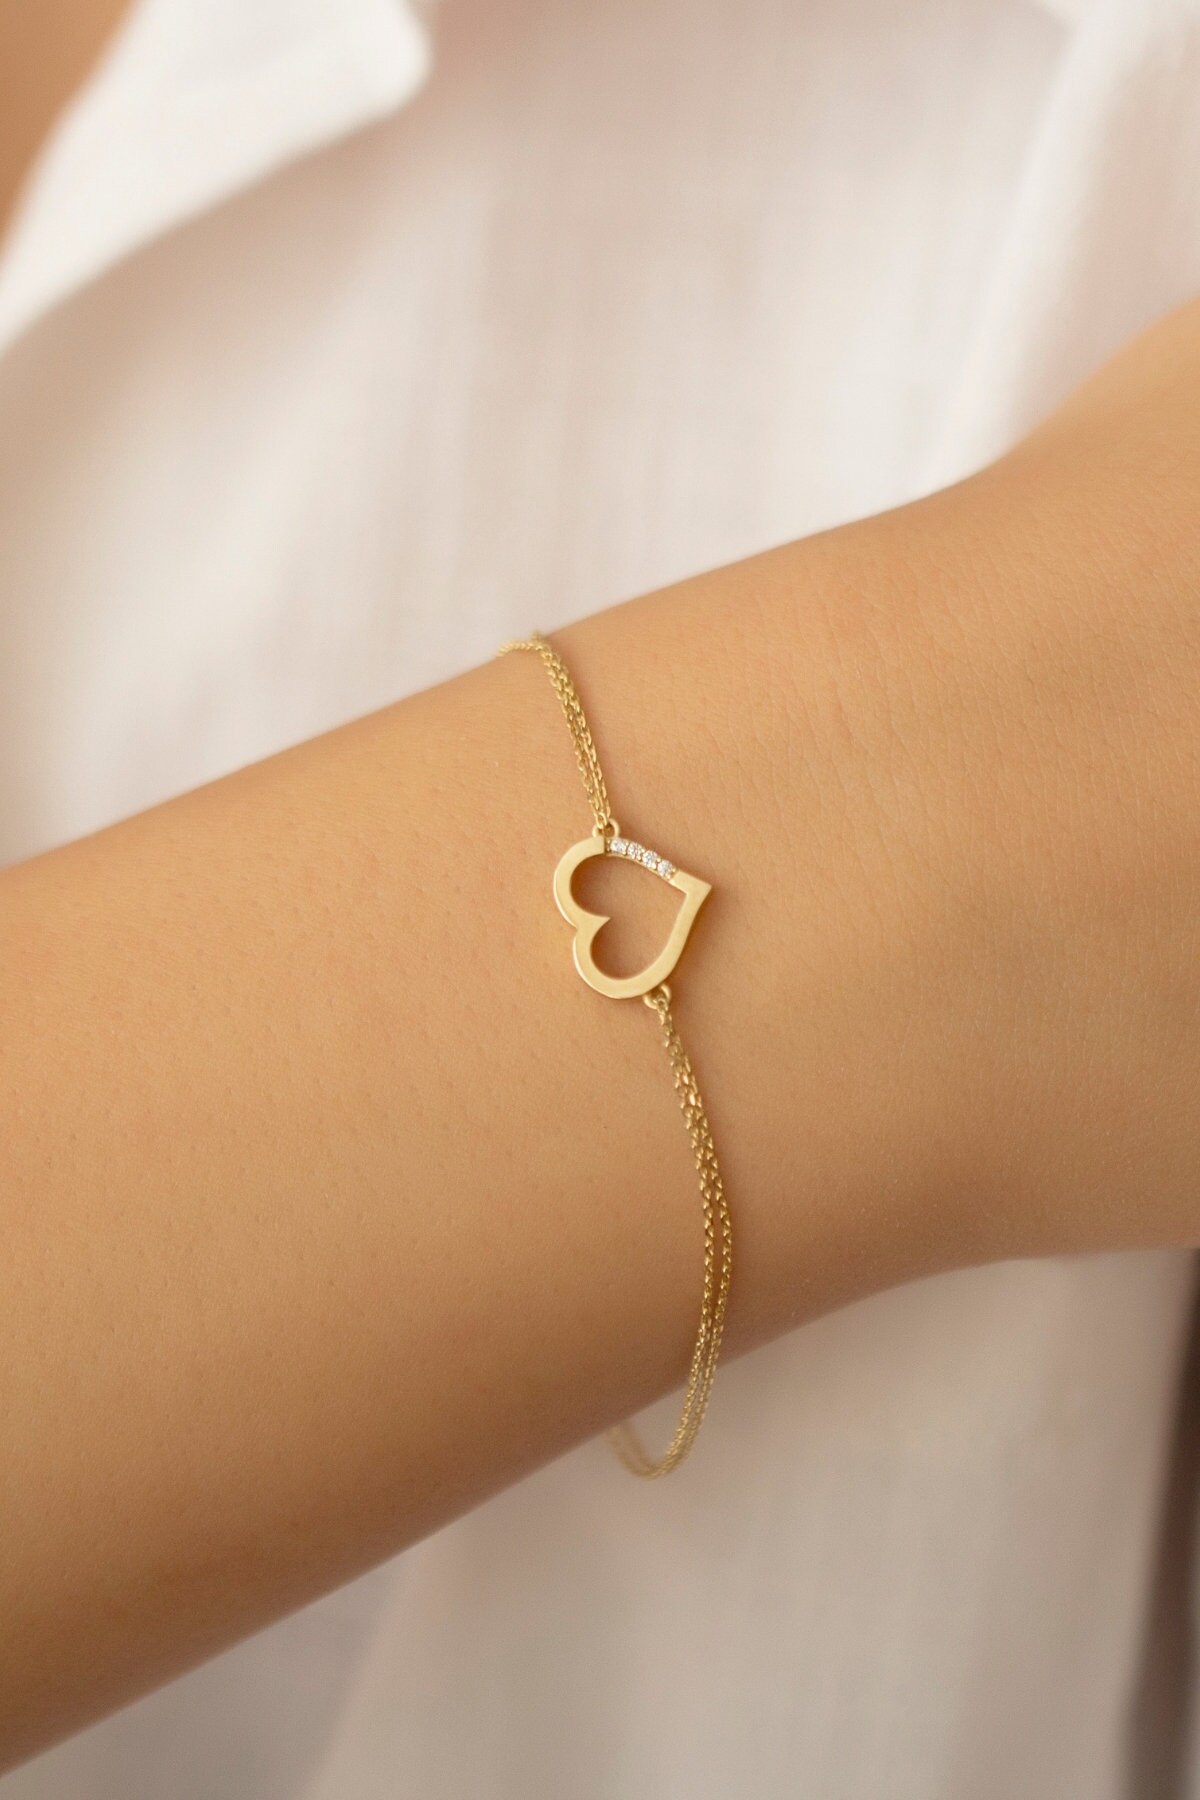 Showroom of 18k rose gold heart shape bracelet  Jewelxy  218321